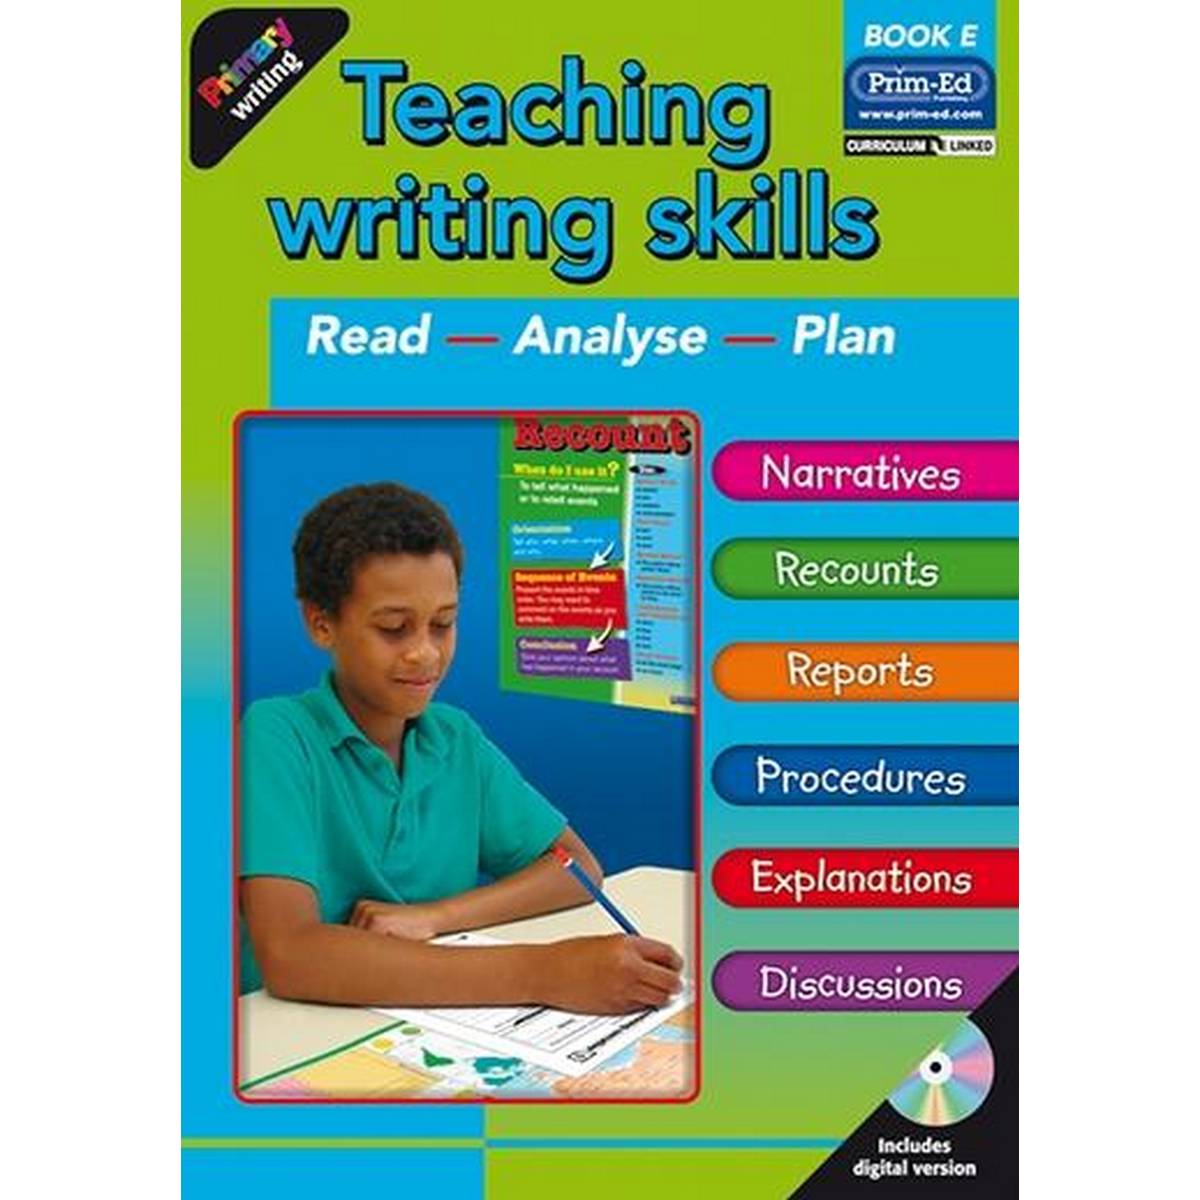 TEACHING WRITING SKILLS: BOOK E